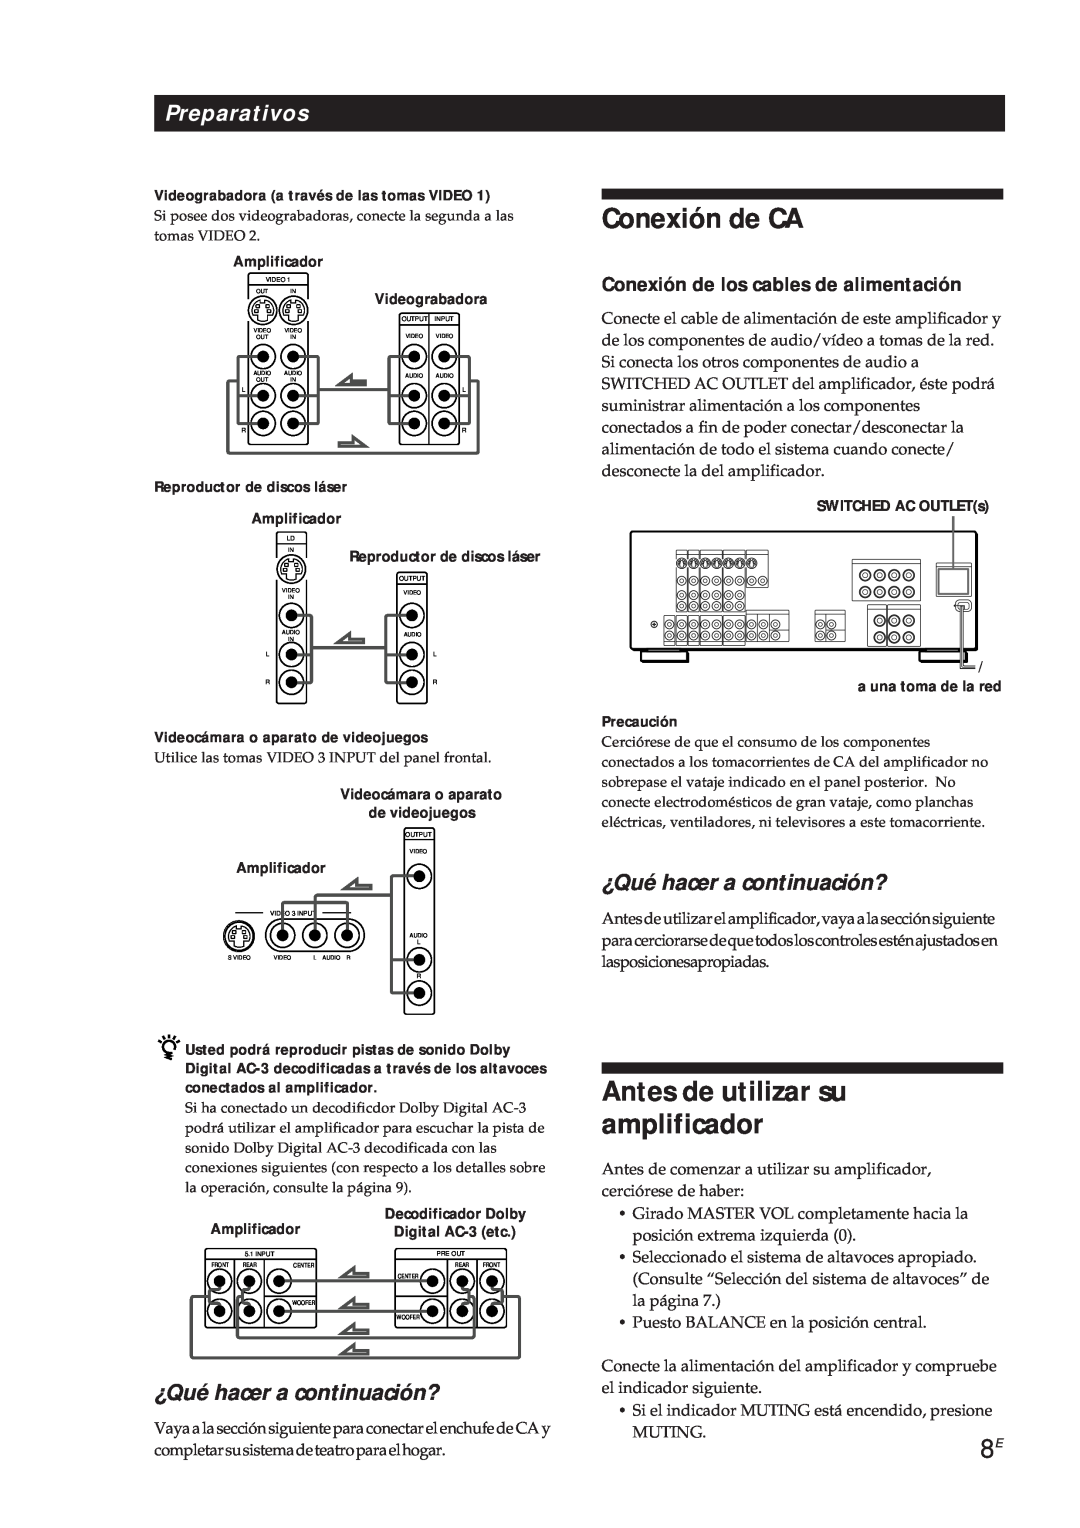 Sony TA-VA7ES manual Conexión de CA, Antes de utilizar su amplificador, Conexión de los cables de alimentación, Precaución 